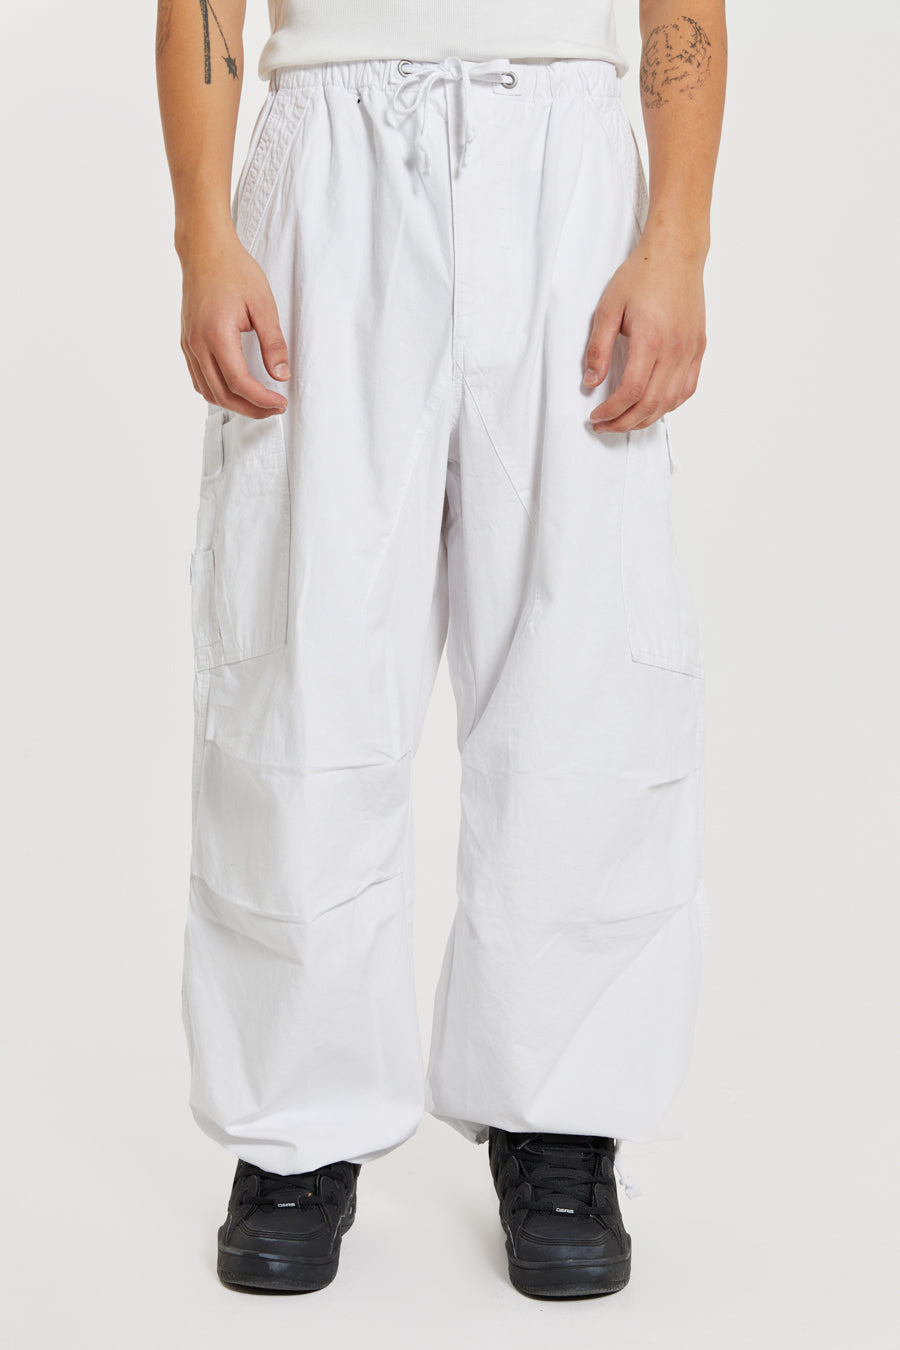 Bershka drawstring waist cargo pants in white | ASOS